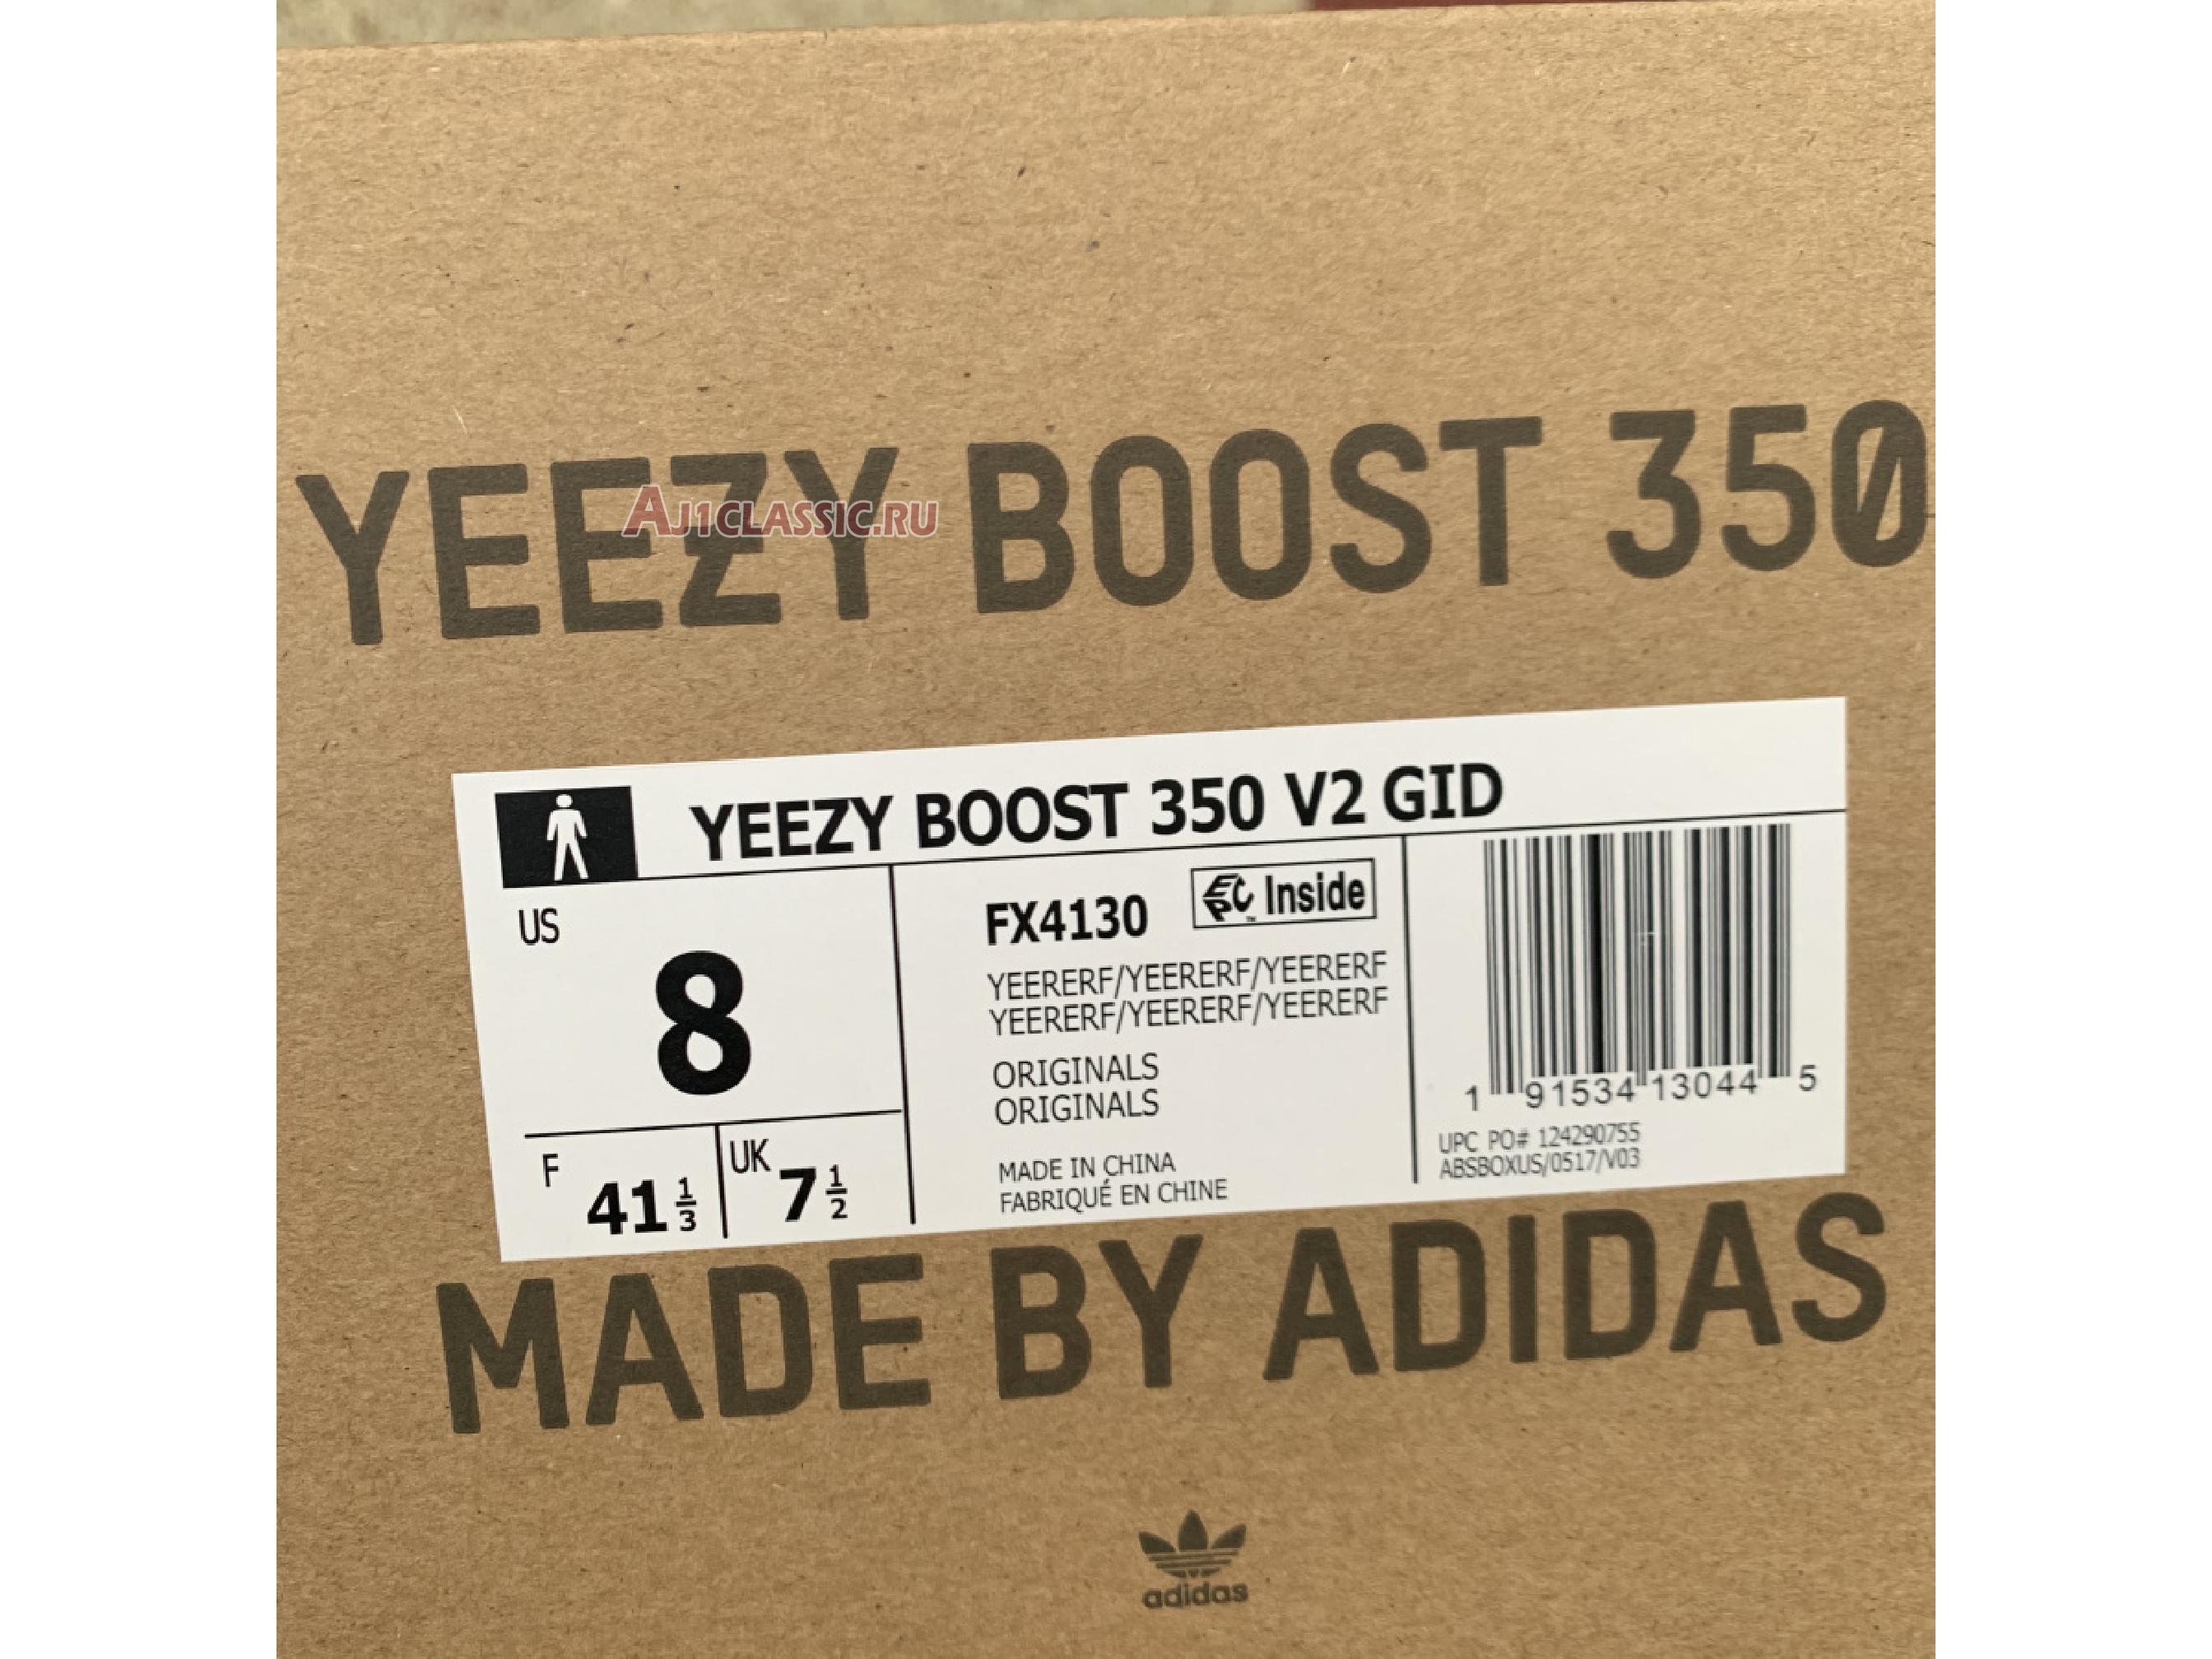 Adidas Yeezy Boost 350 V2 "Yeezreel Reflective" FX4130